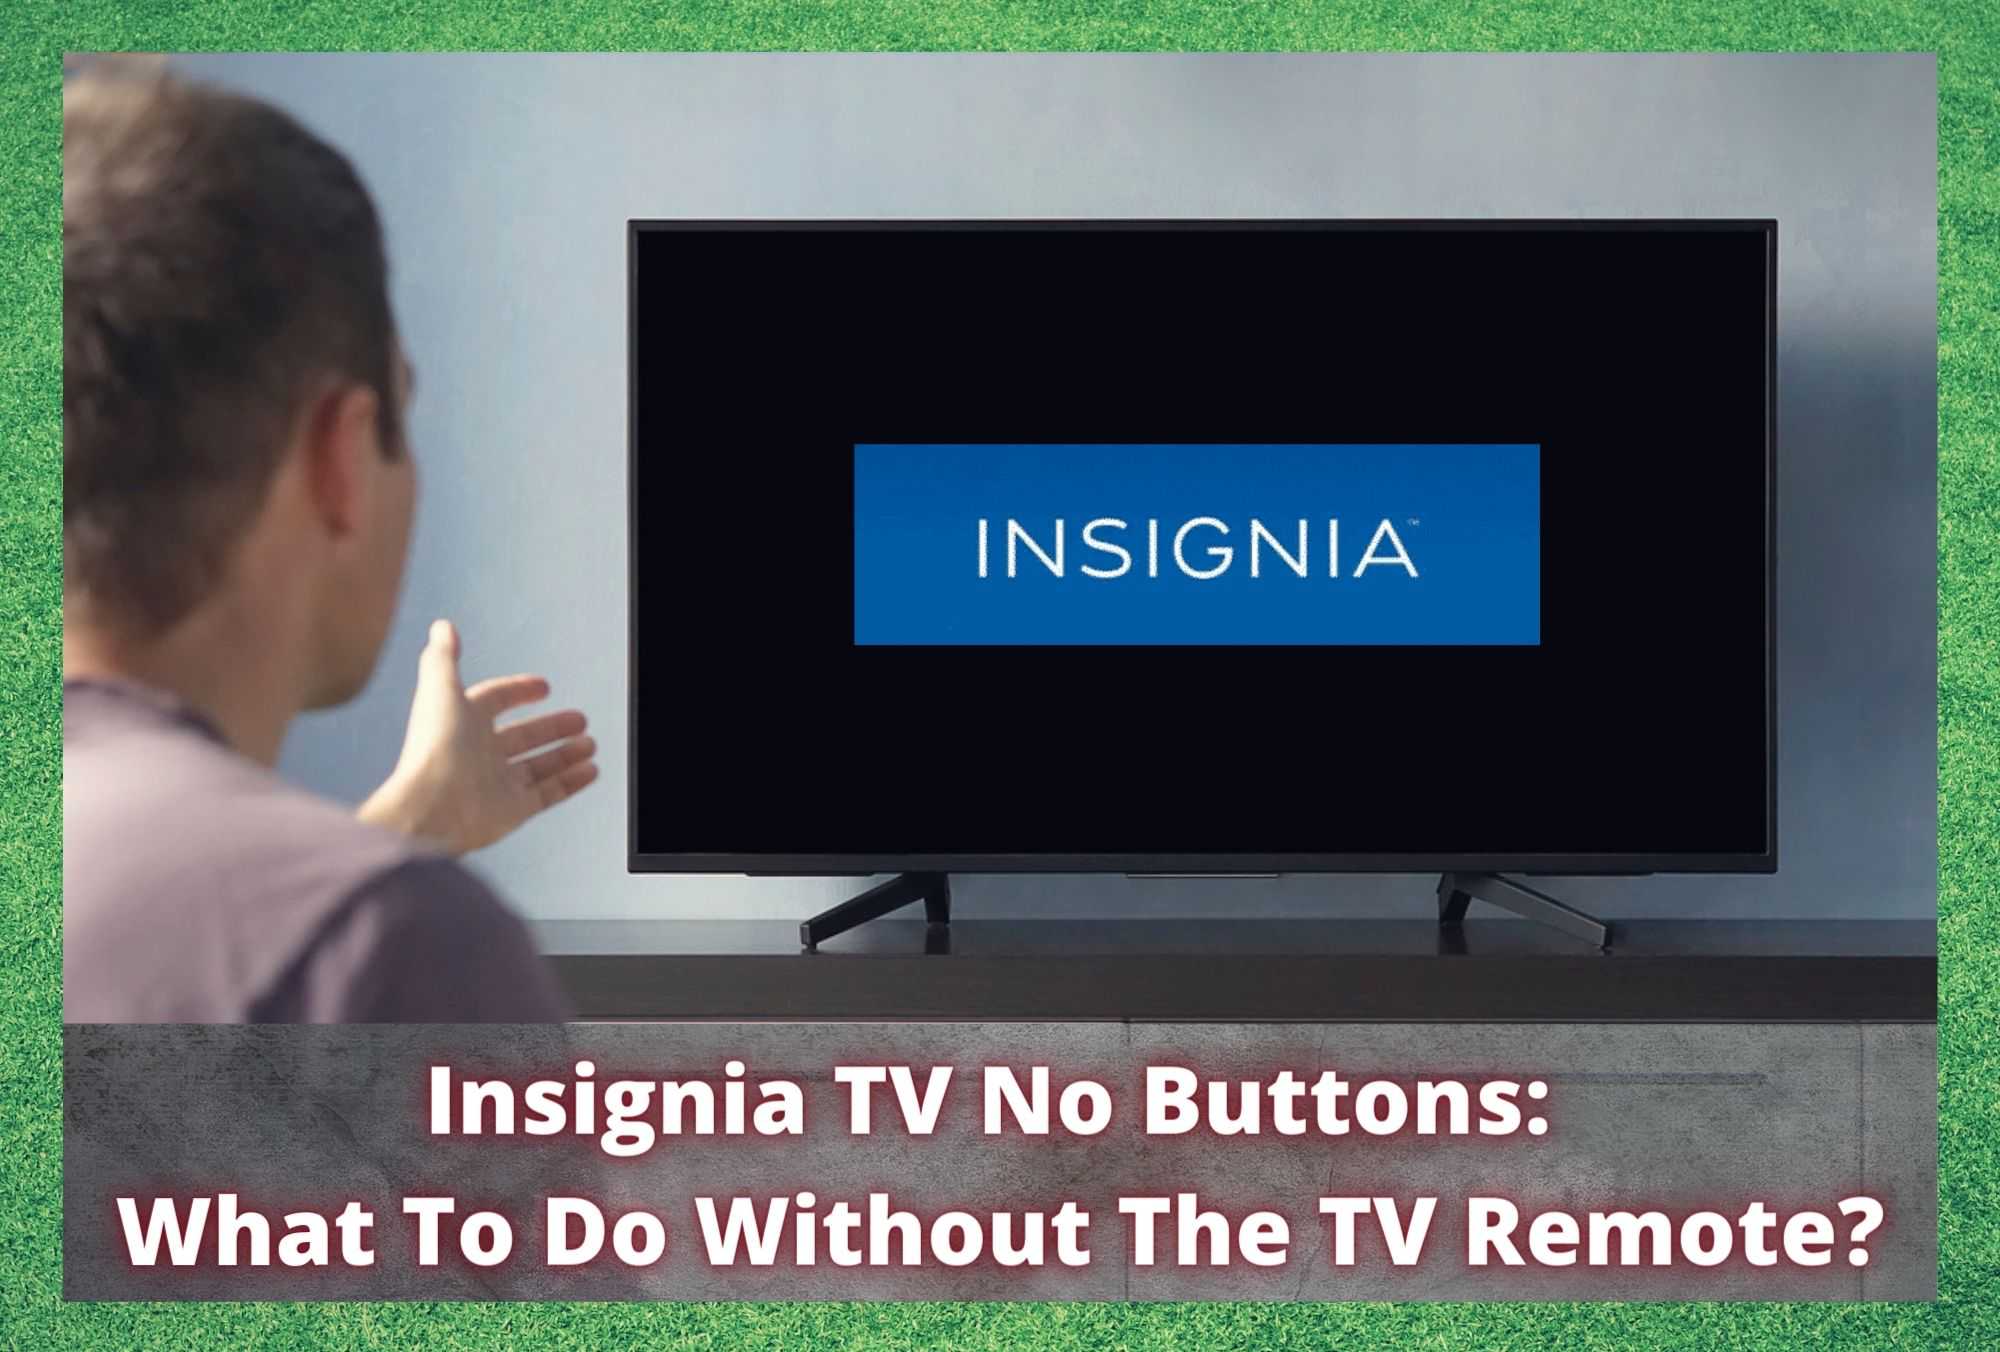 Insignia TV ღილაკების გარეშე: რა უნდა გავაკეთოთ ტელევიზორის პულტის გარეშე?